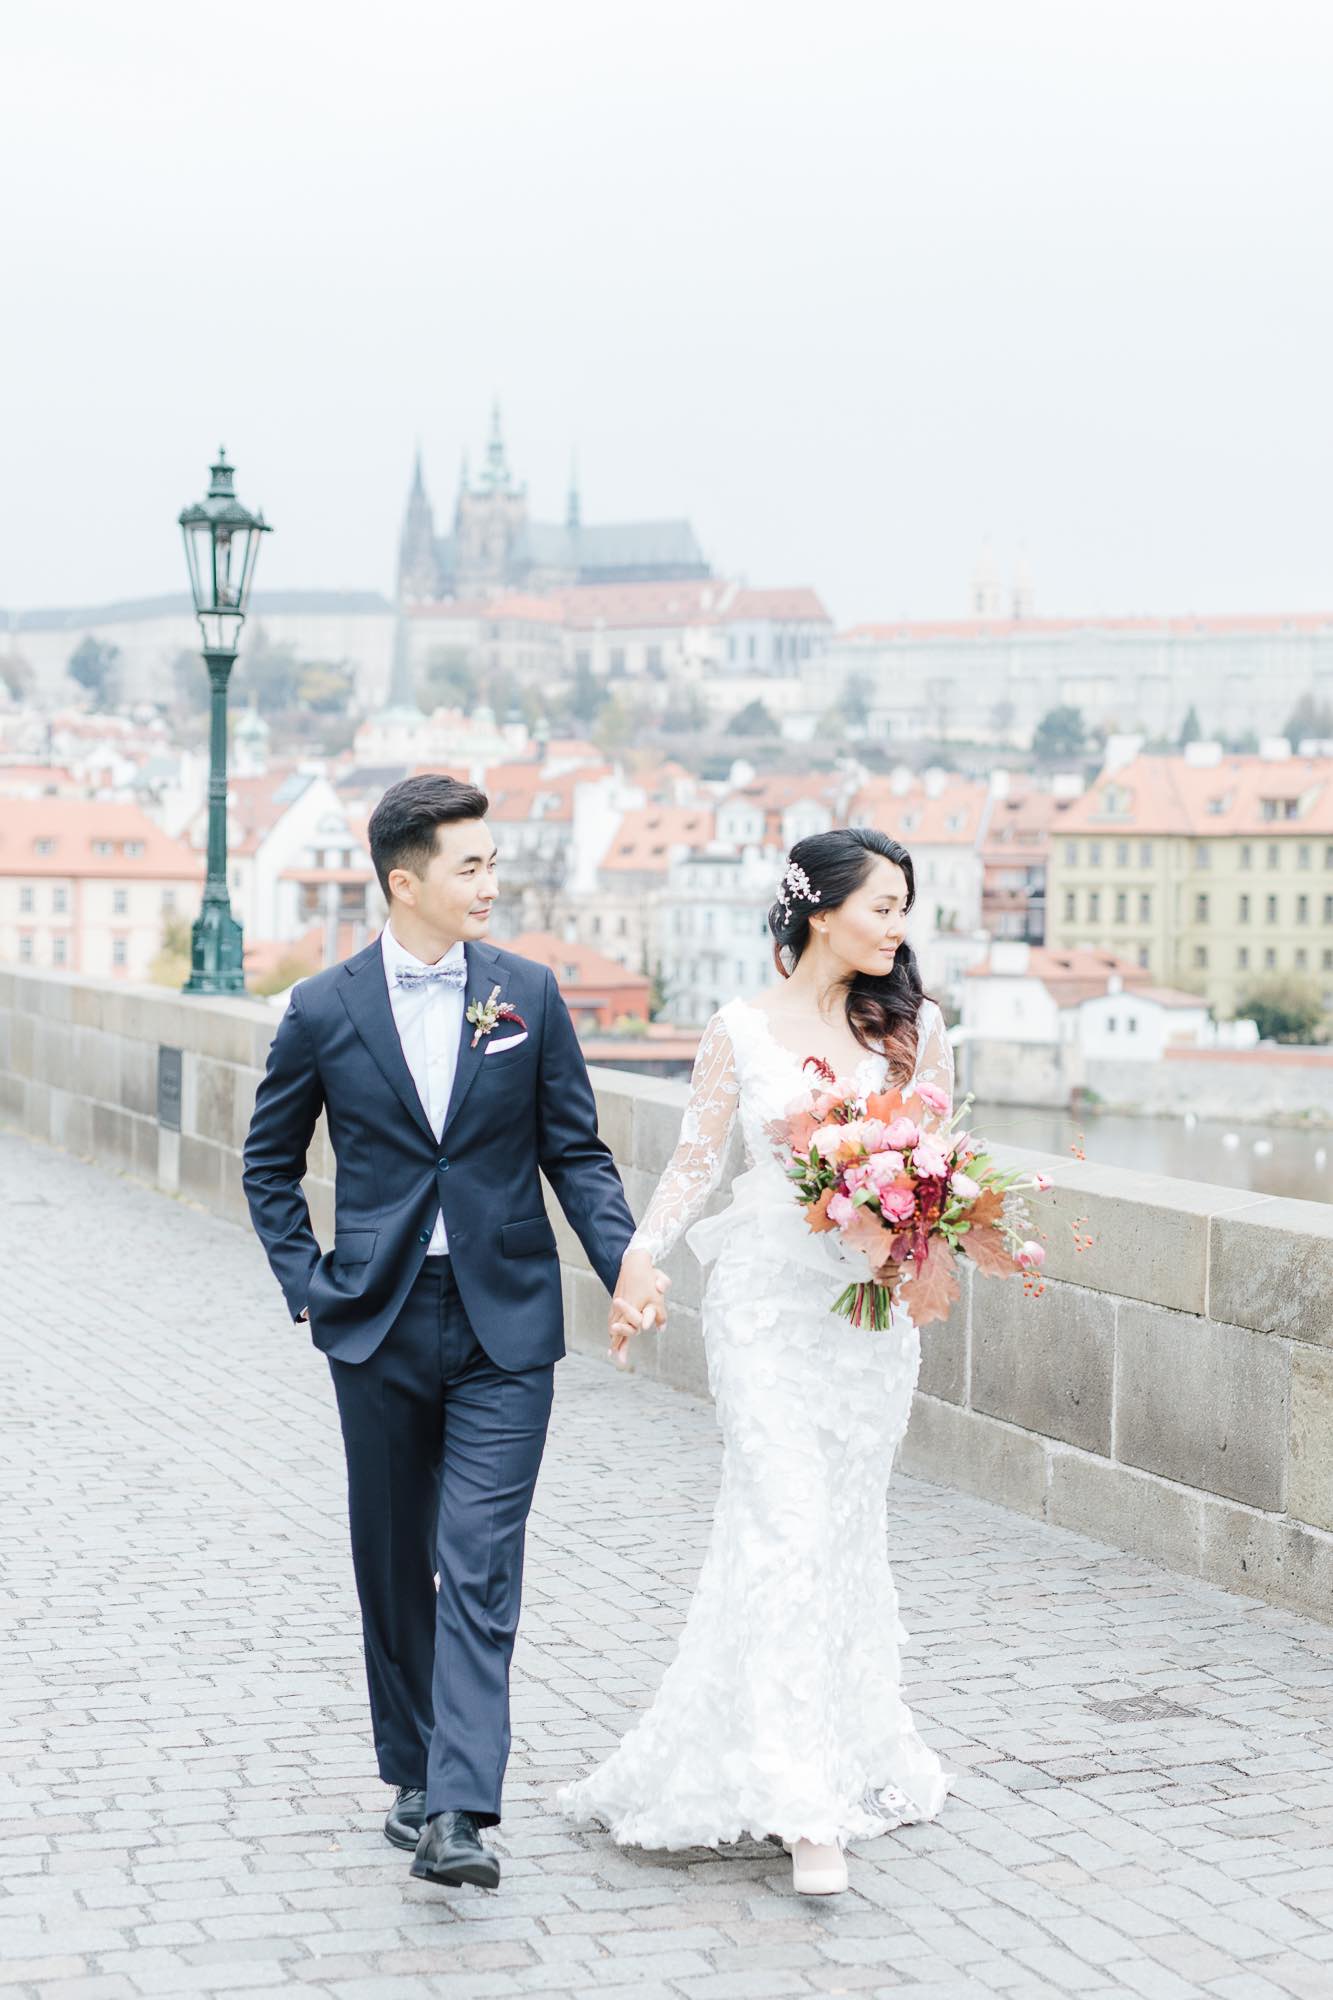 Old Town Hall - Weddings in Prague - Julie May